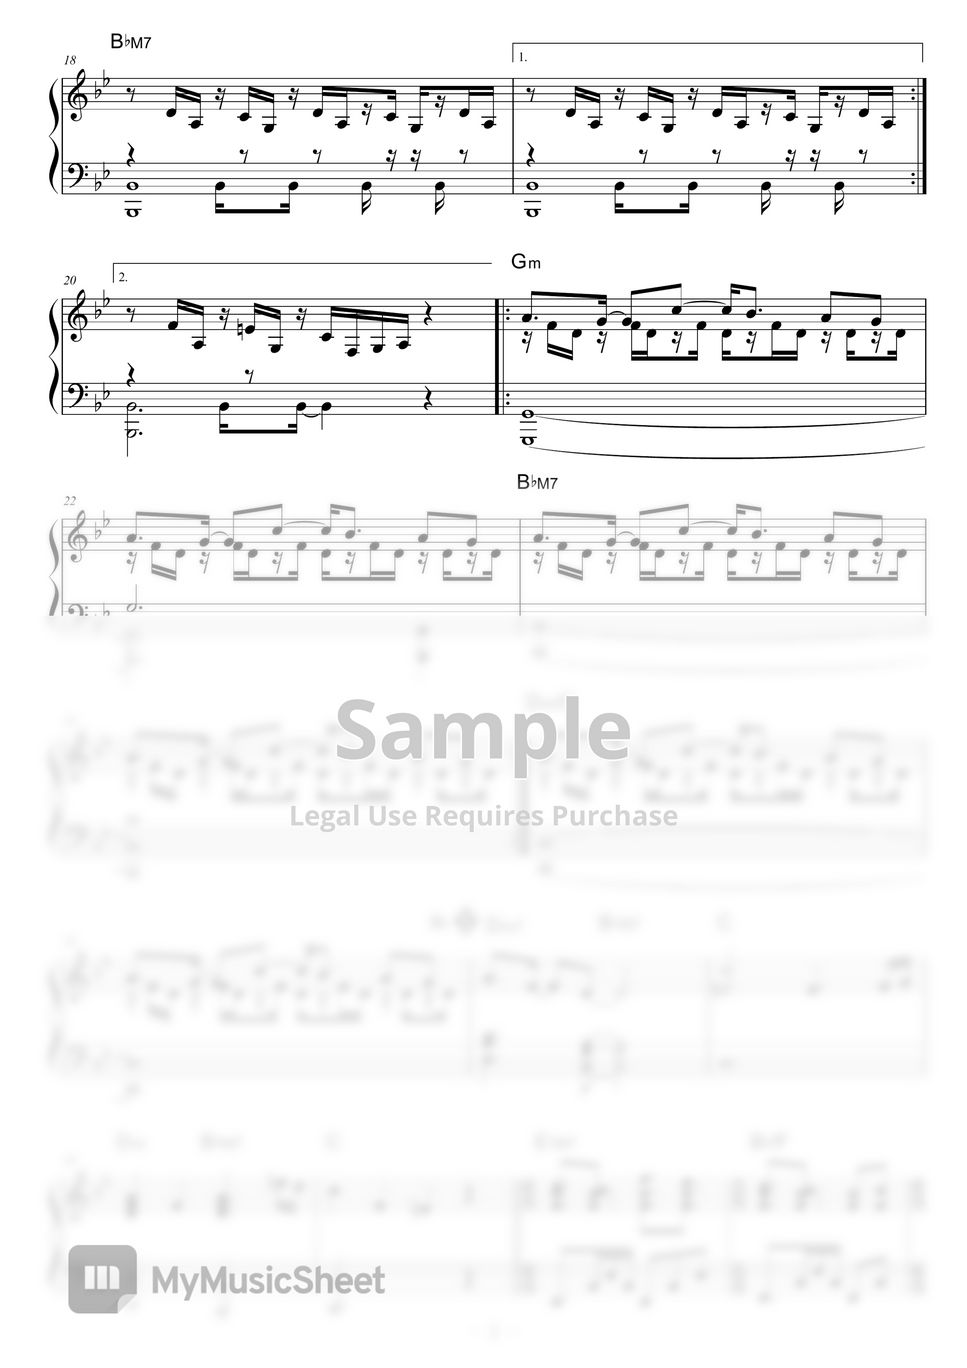 Schroeder-Headz - Hype by piano*score